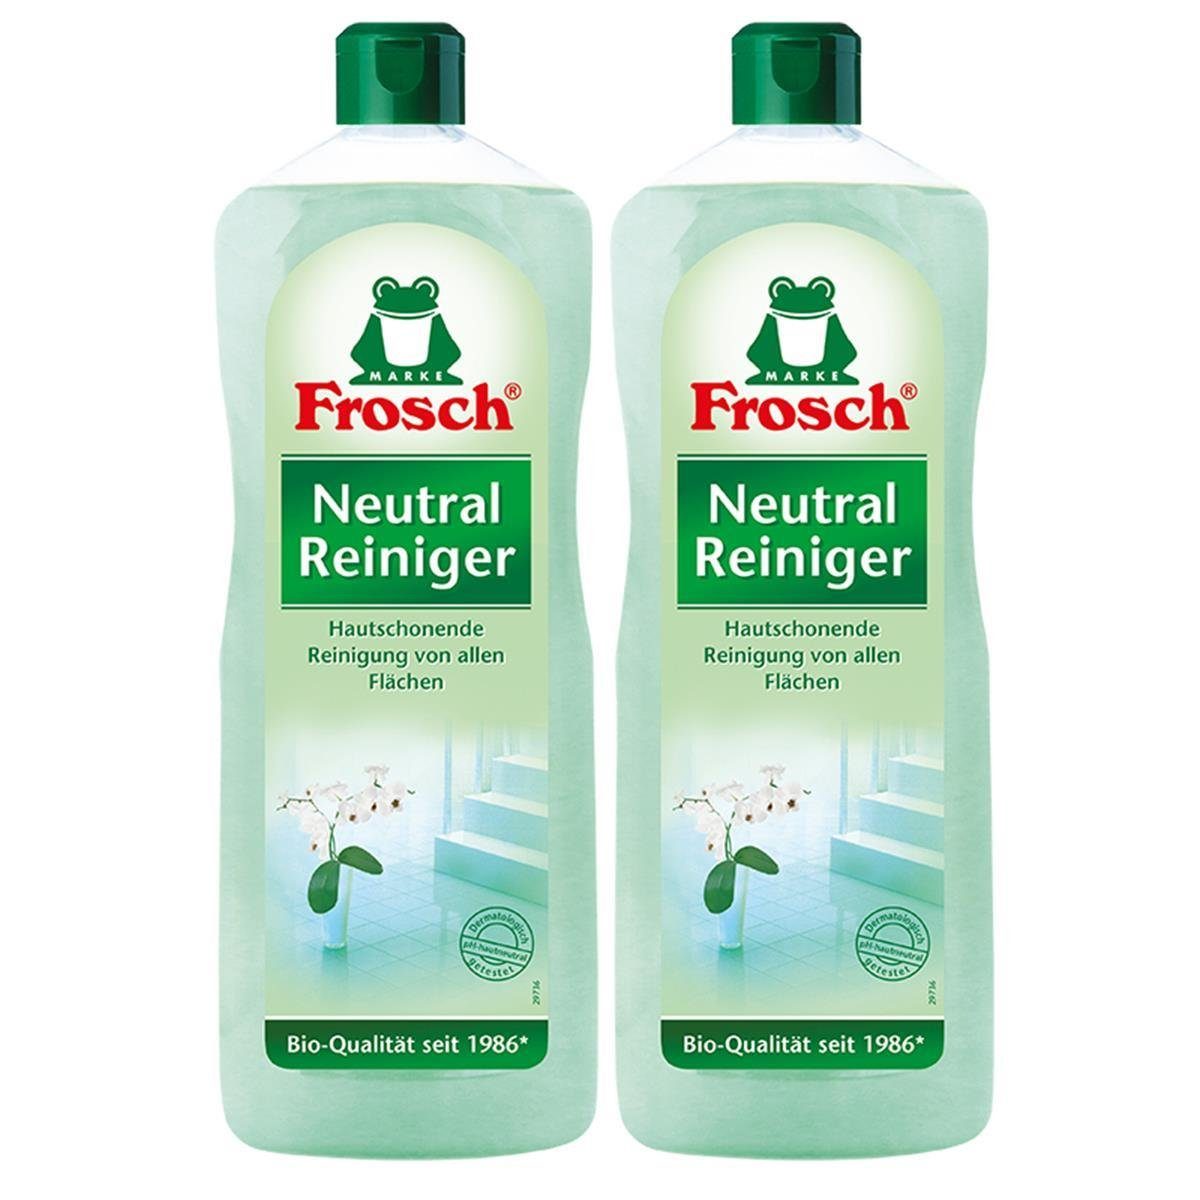 FROSCH 2x Frosch Neutral Reiniger1 Allzweckreiniger Liter